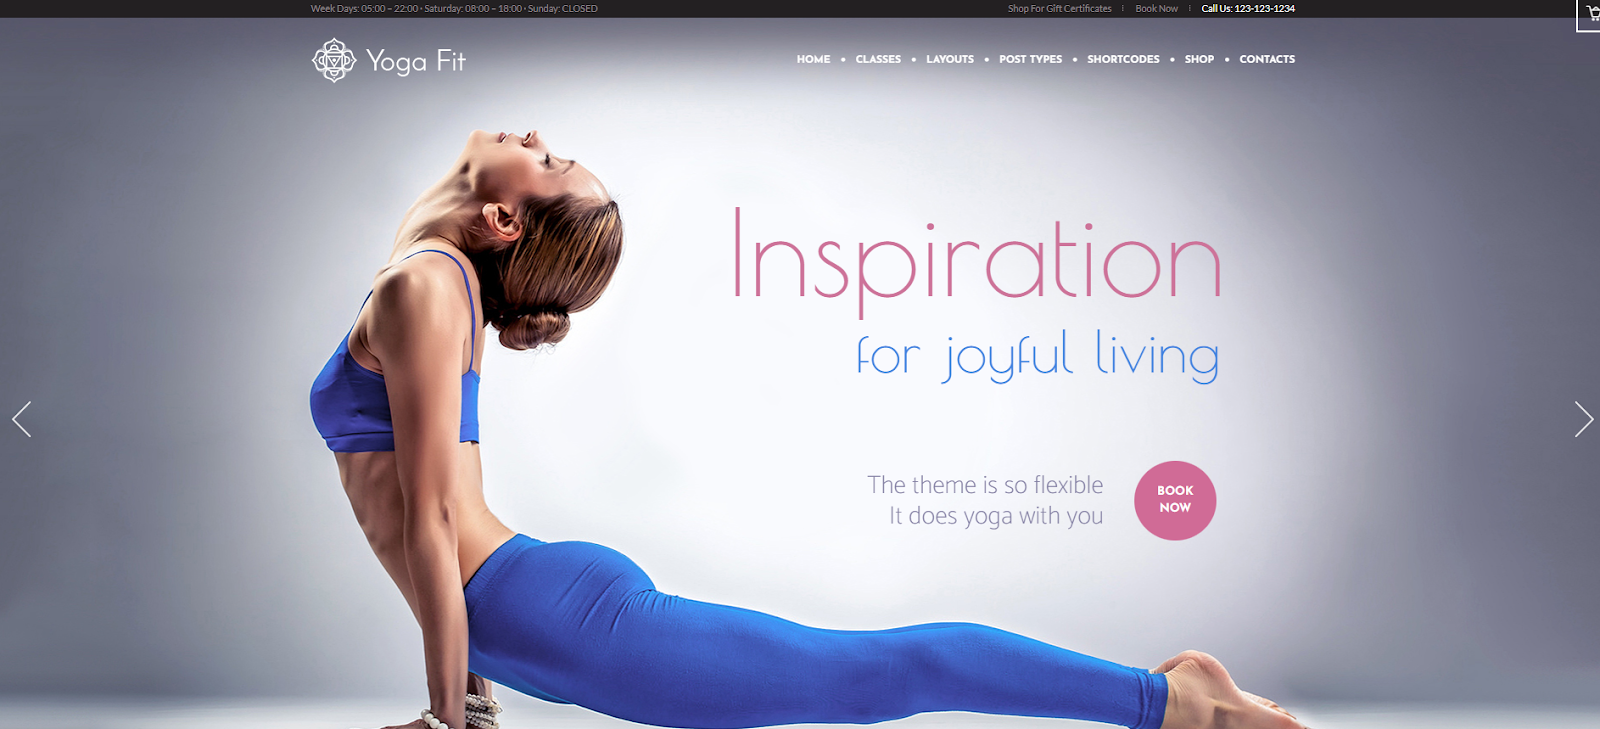 Yoga Fit Theme in WordPress